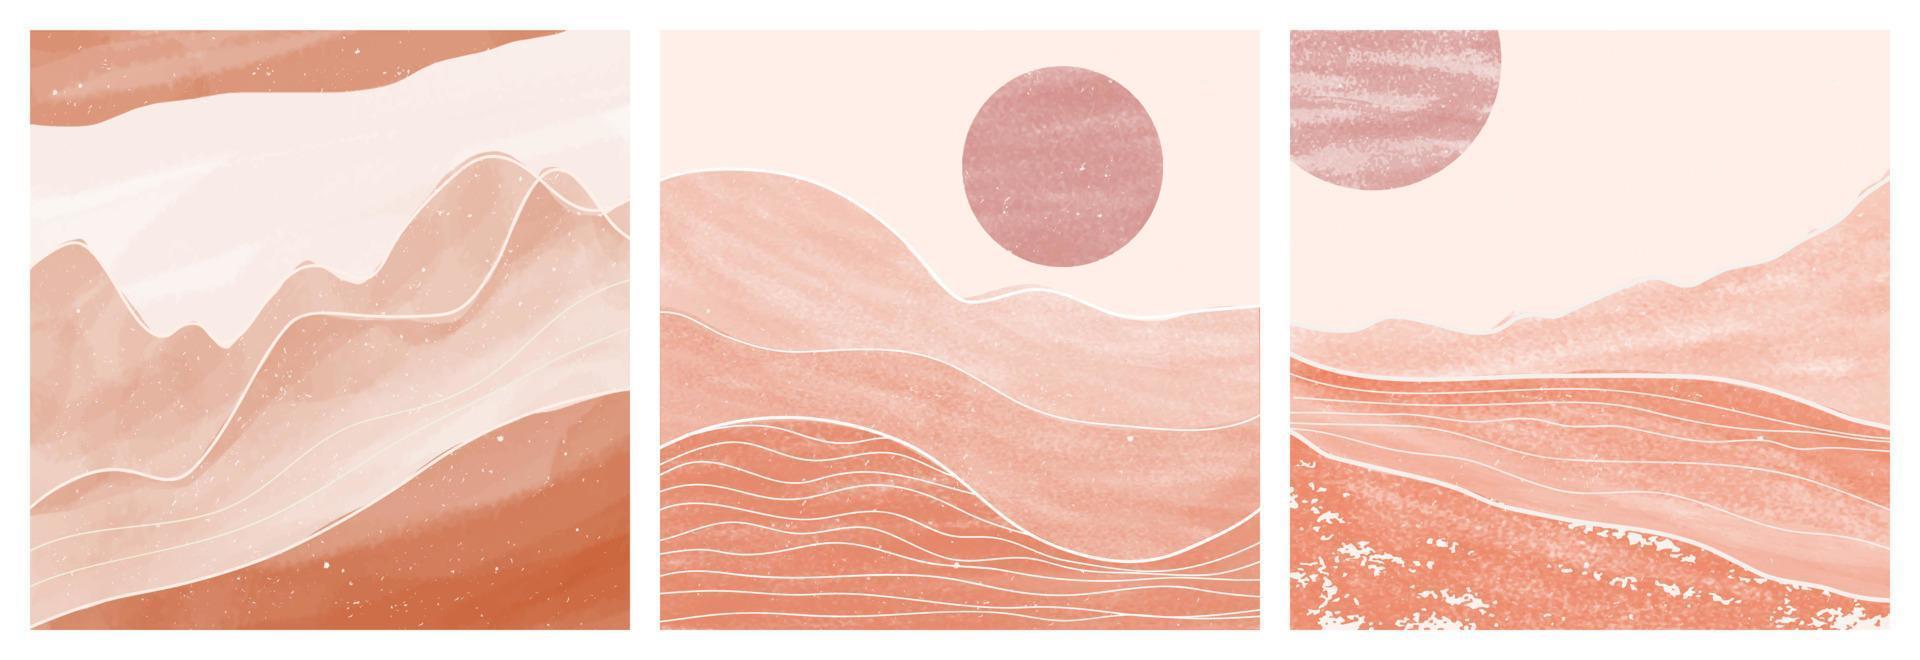 mitten av århundradet modernt minimalistisk konsttryck. abstrakta samtida estetiska bakgrunder landskap med sol, måne, hav, berg. vektor illustrationer